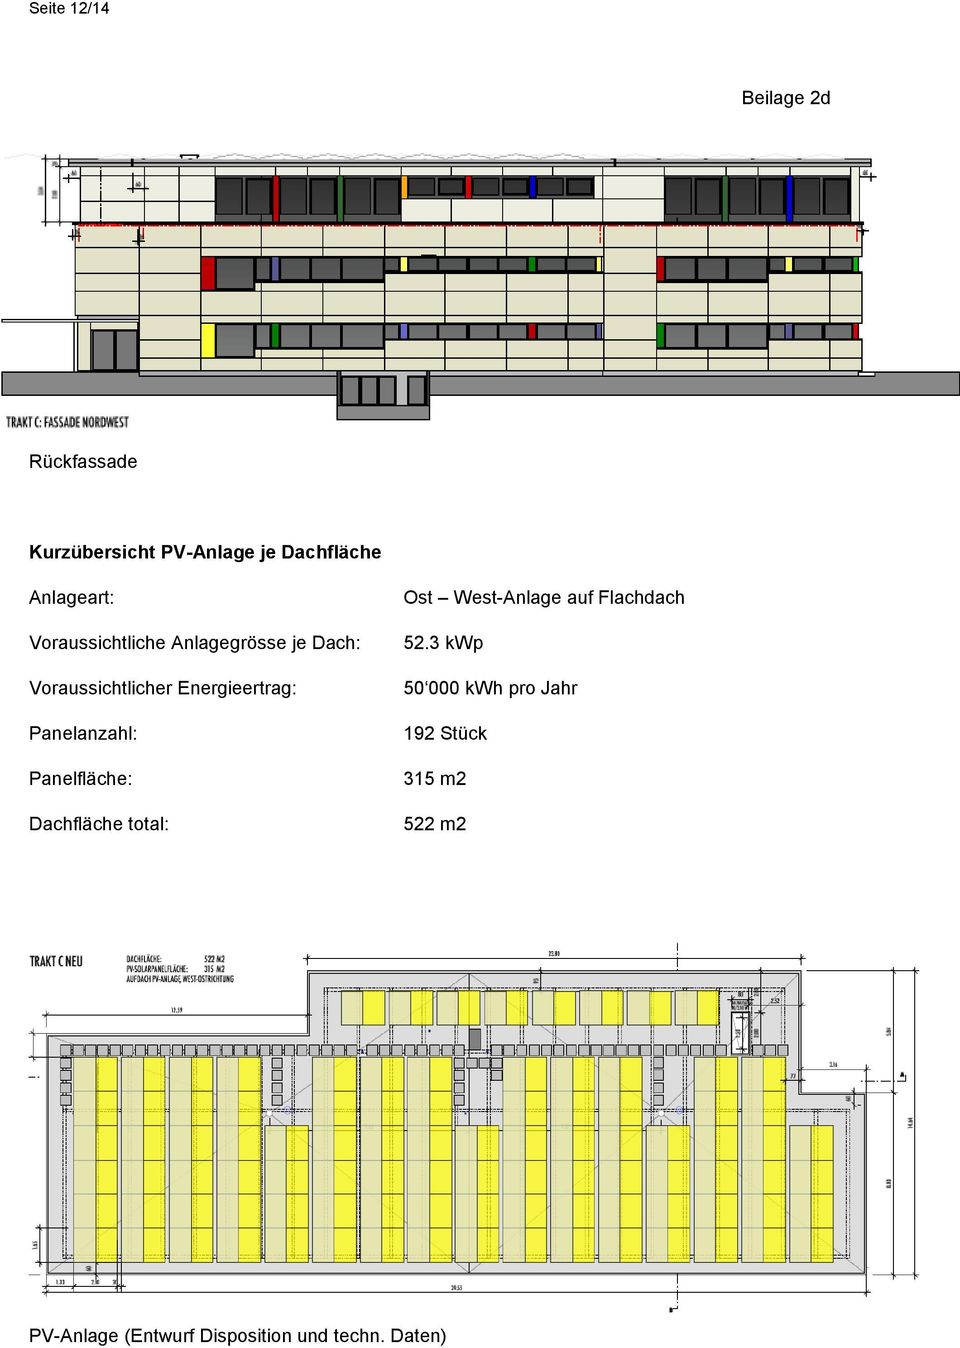 Panelanzahl: Panelfläche: Dachfläche total: Ost West-Anlage auf Flachdach 52.